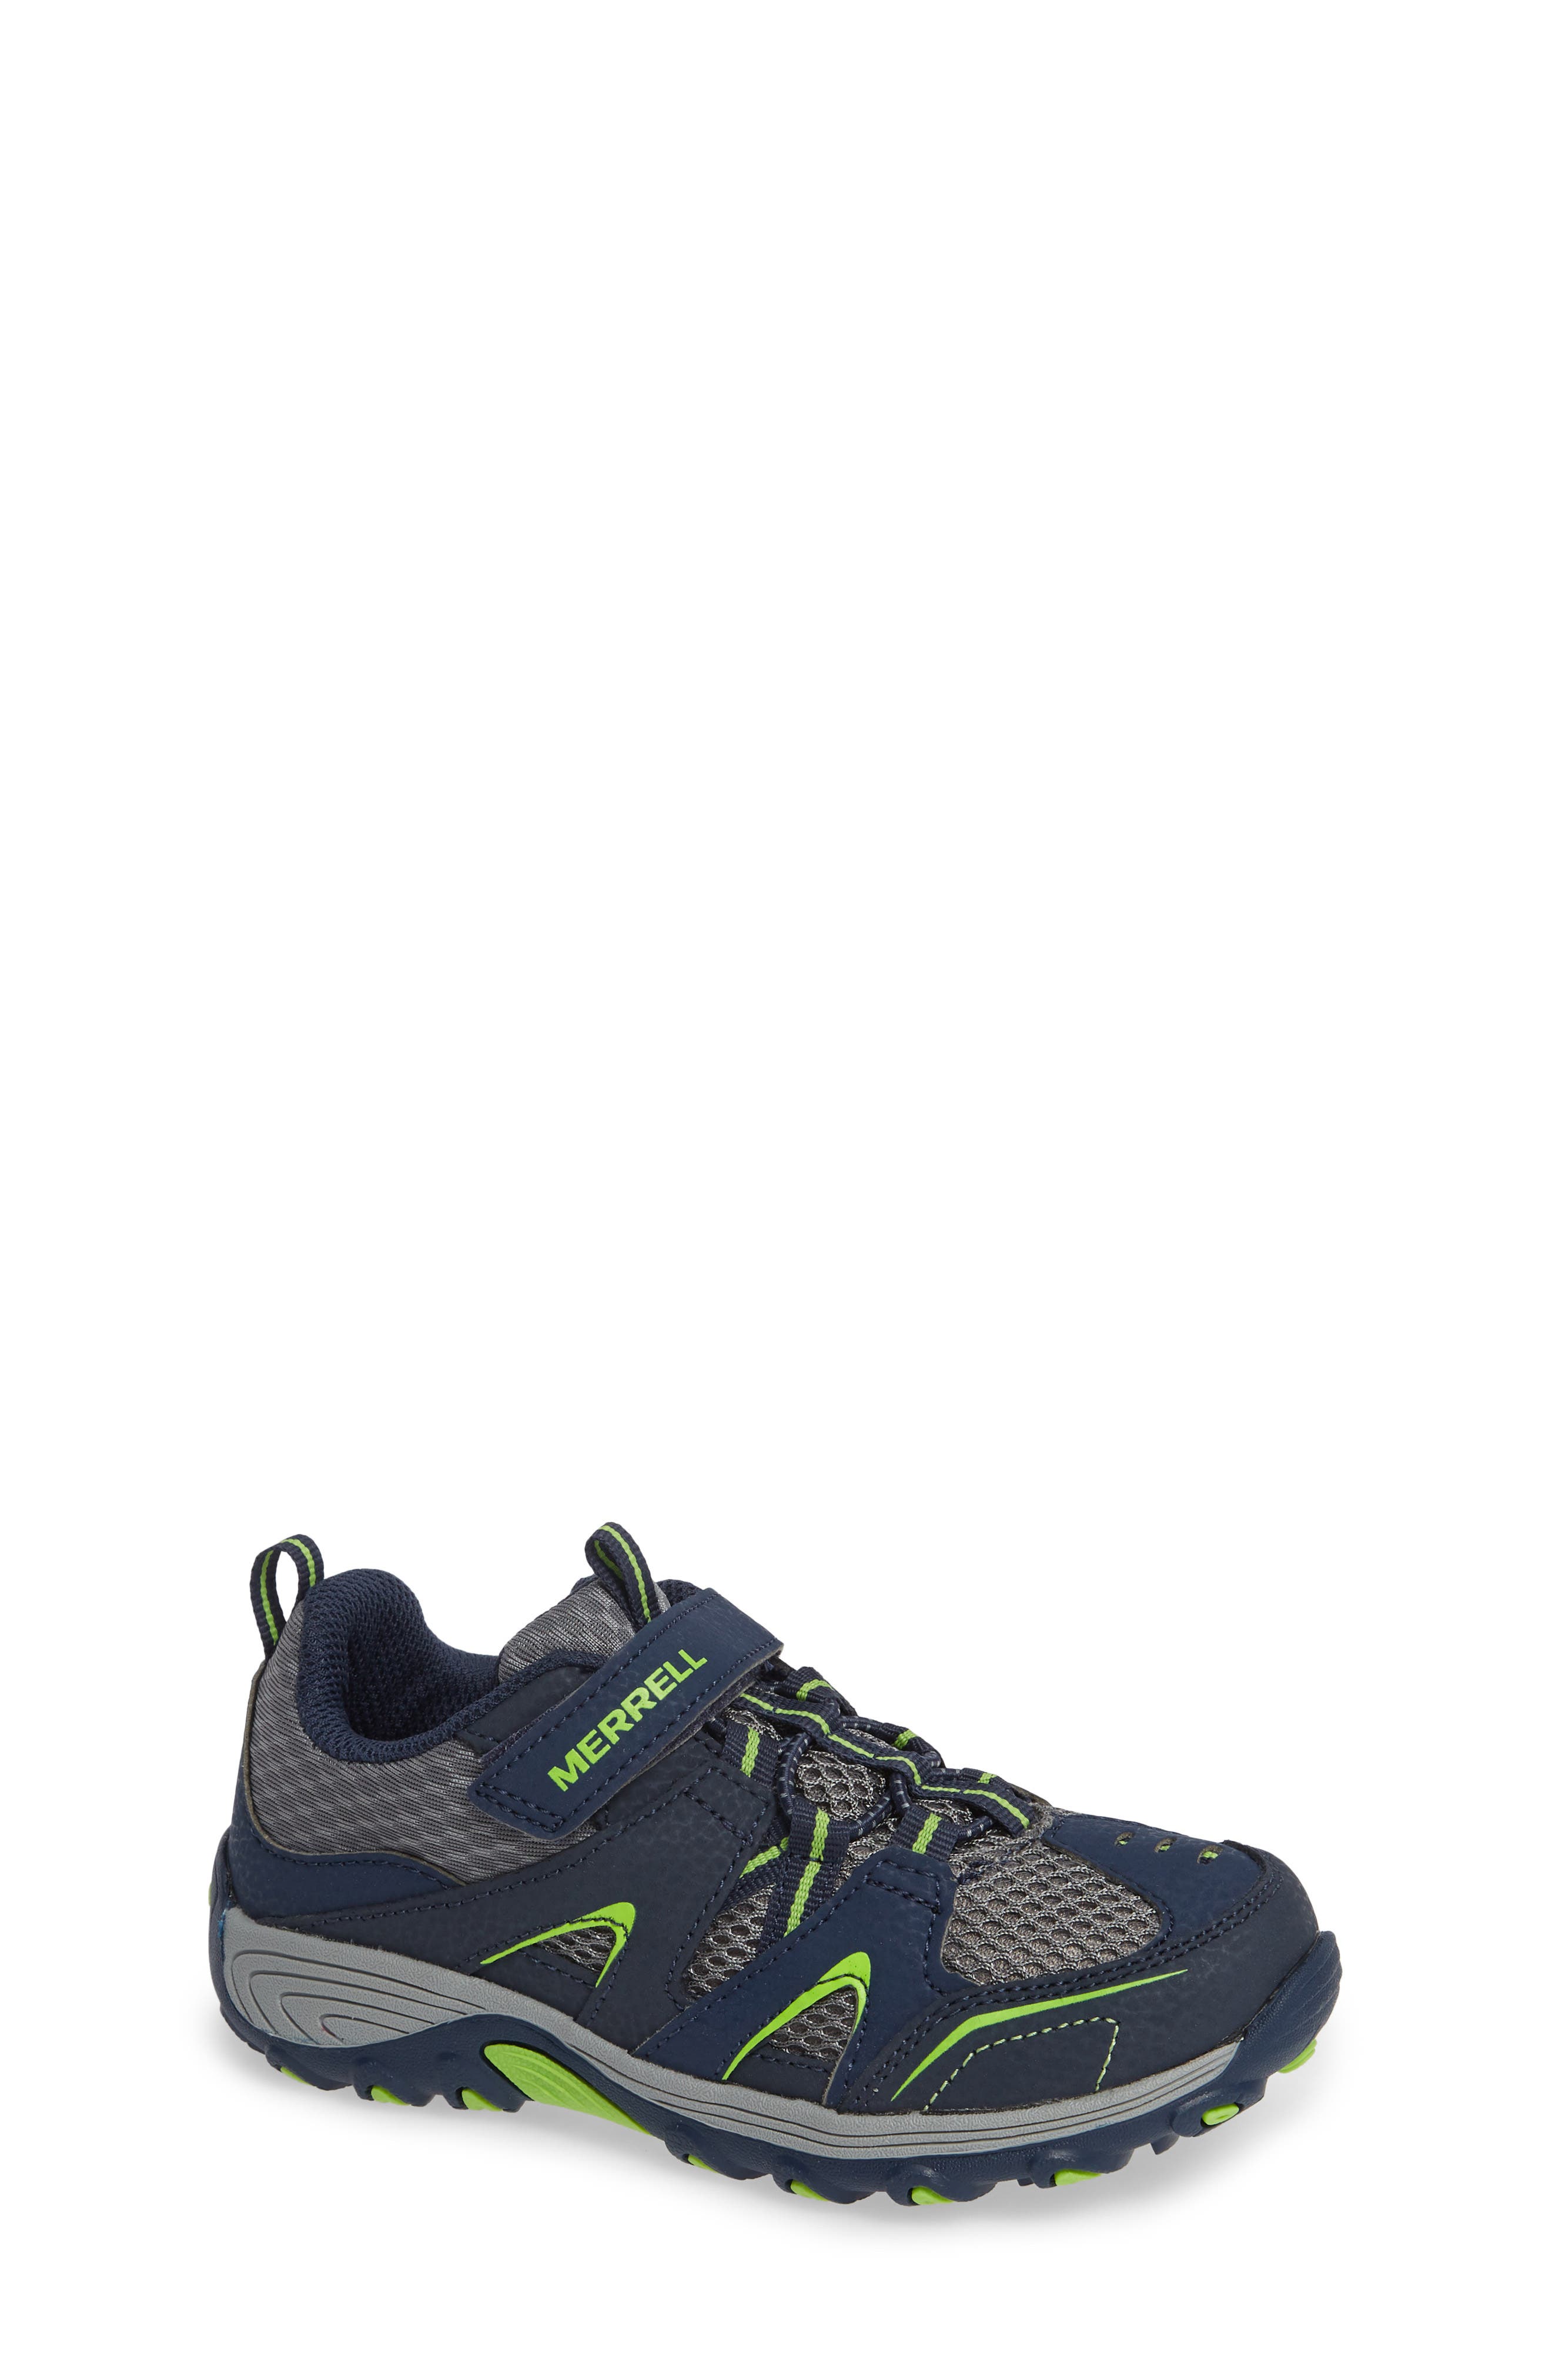 UPC 886129943271 - Toddler Merrell Trail Chaser Sneaker, Size 1 M ...